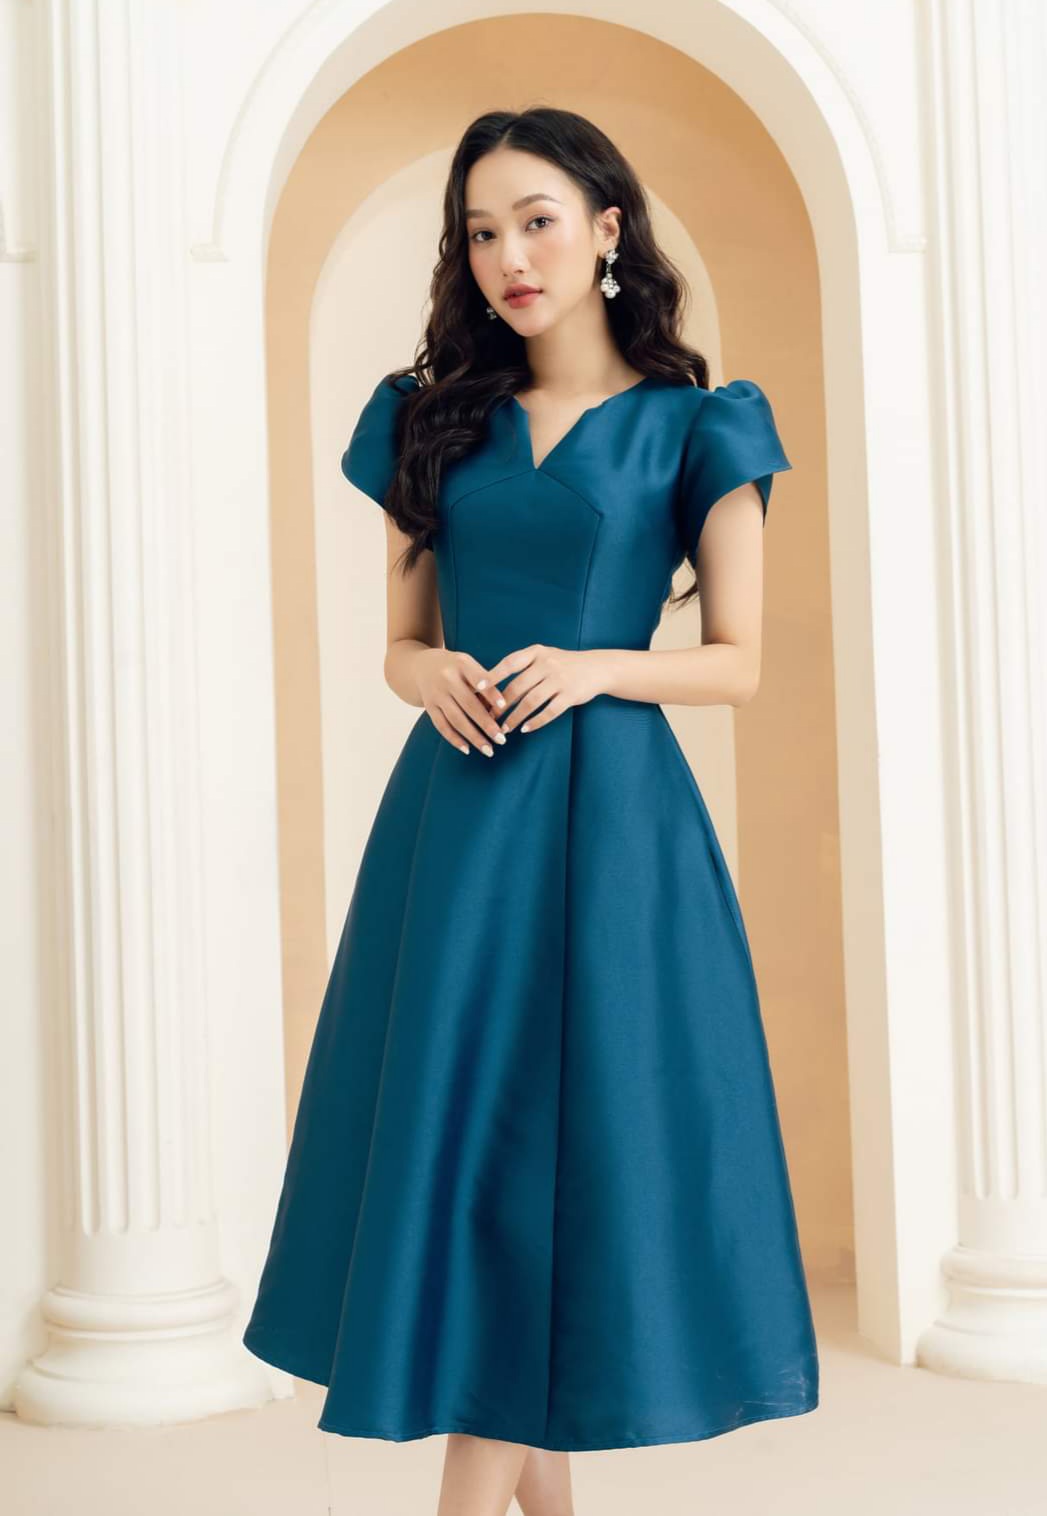 Ý nghĩa chiếc váy cưới màu xanh | #5 Mẫu váy cưới màu xanh hút hồn